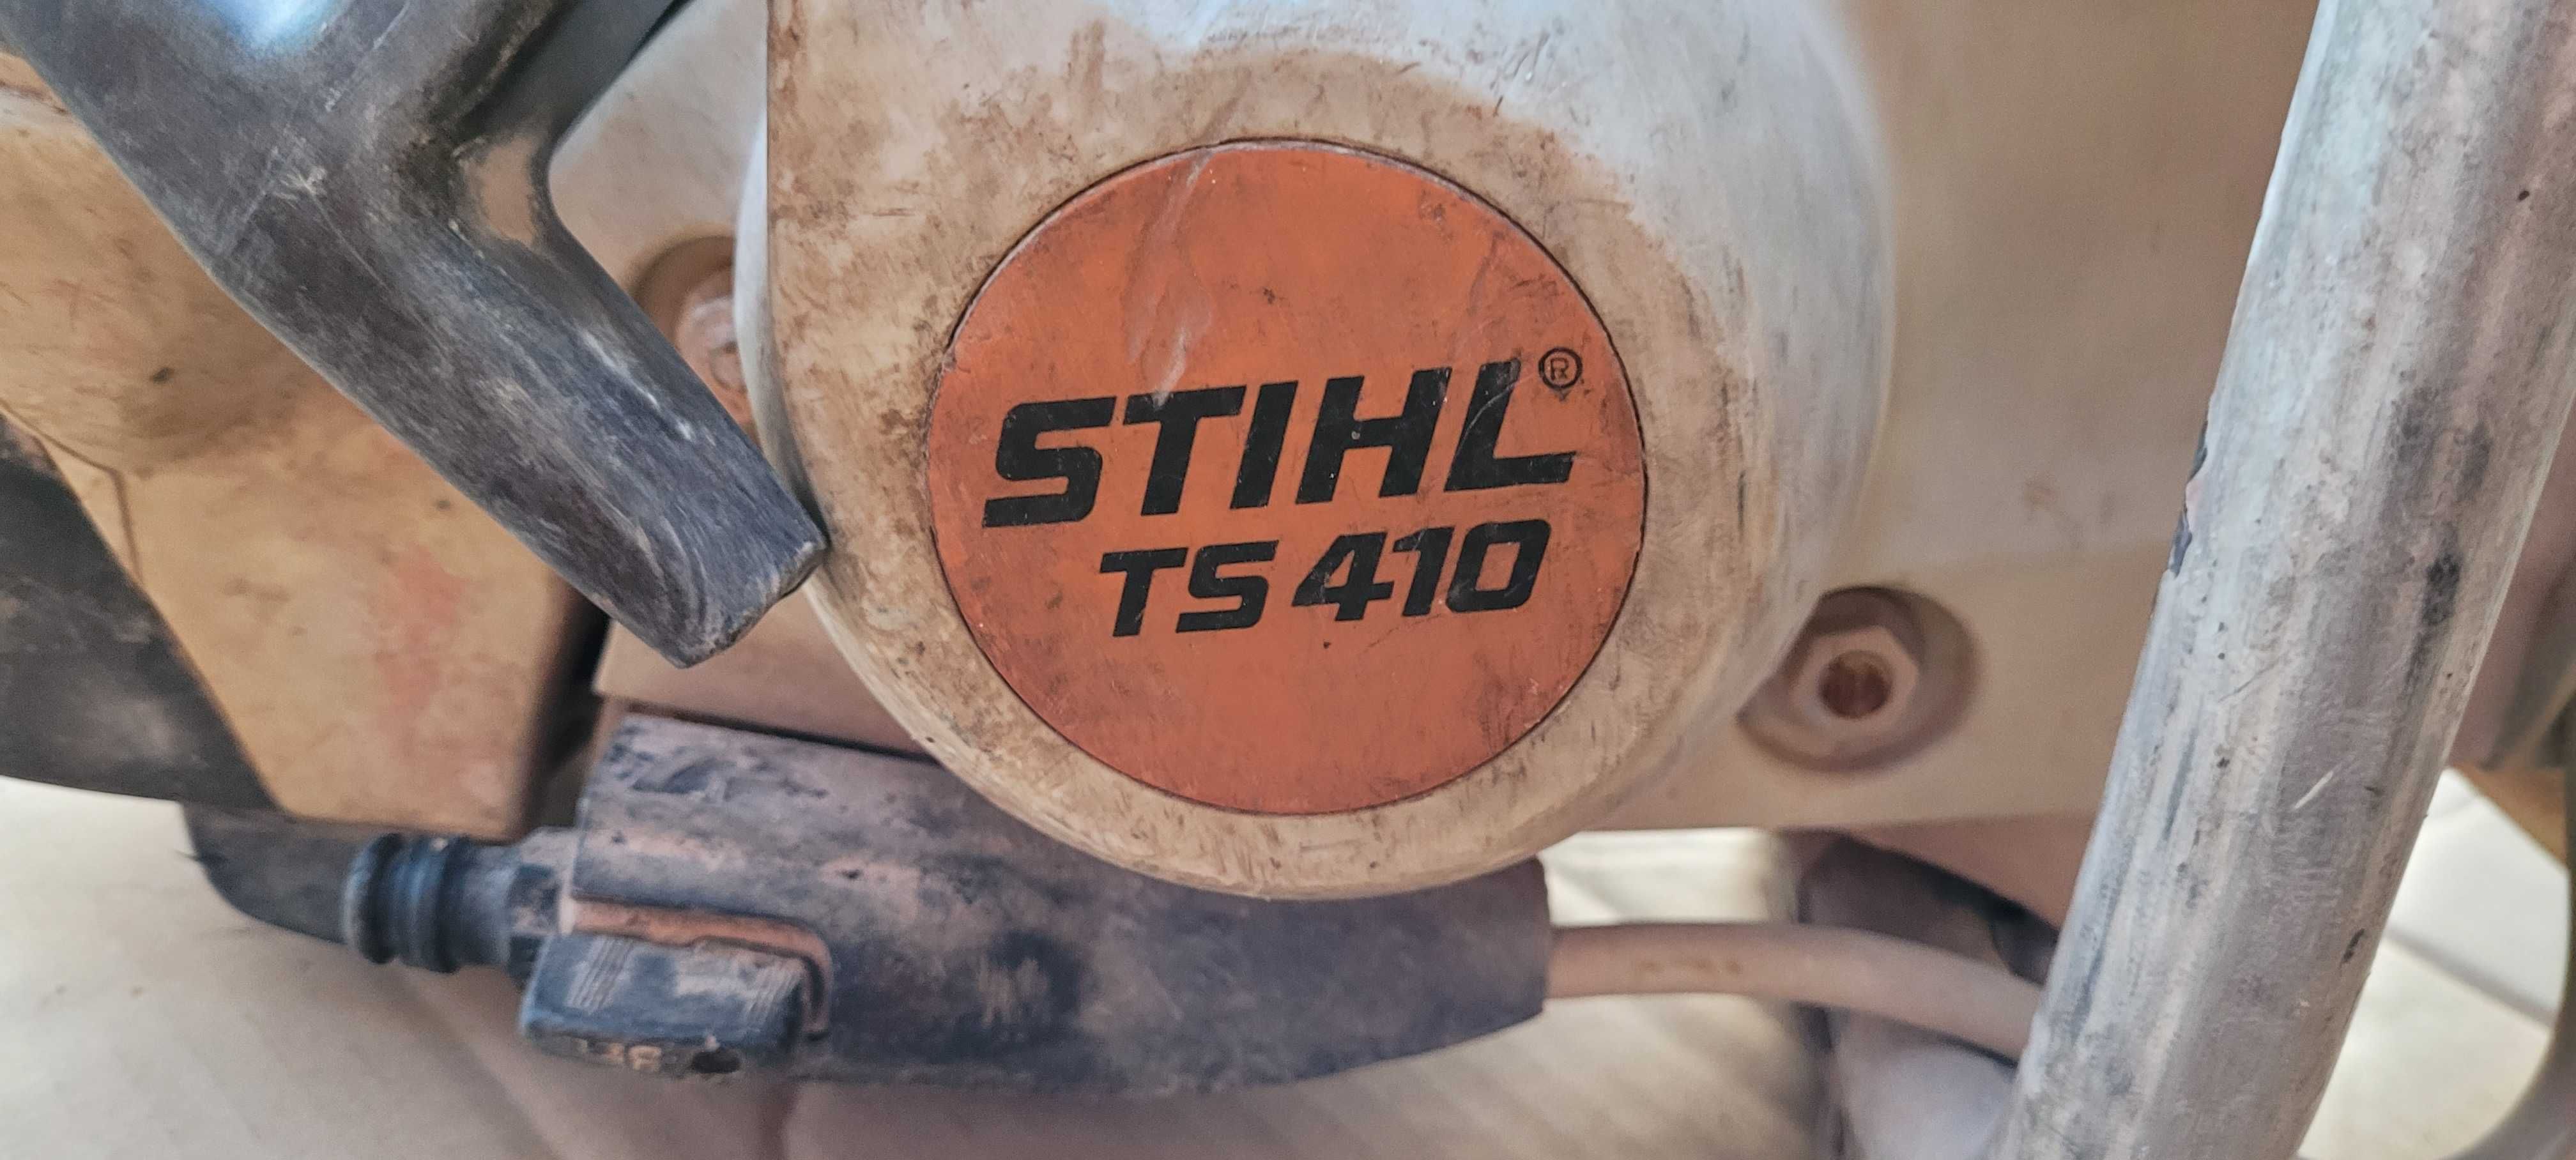 Piła STIHL TS 410 przecinarka kostki betonu spalinowa